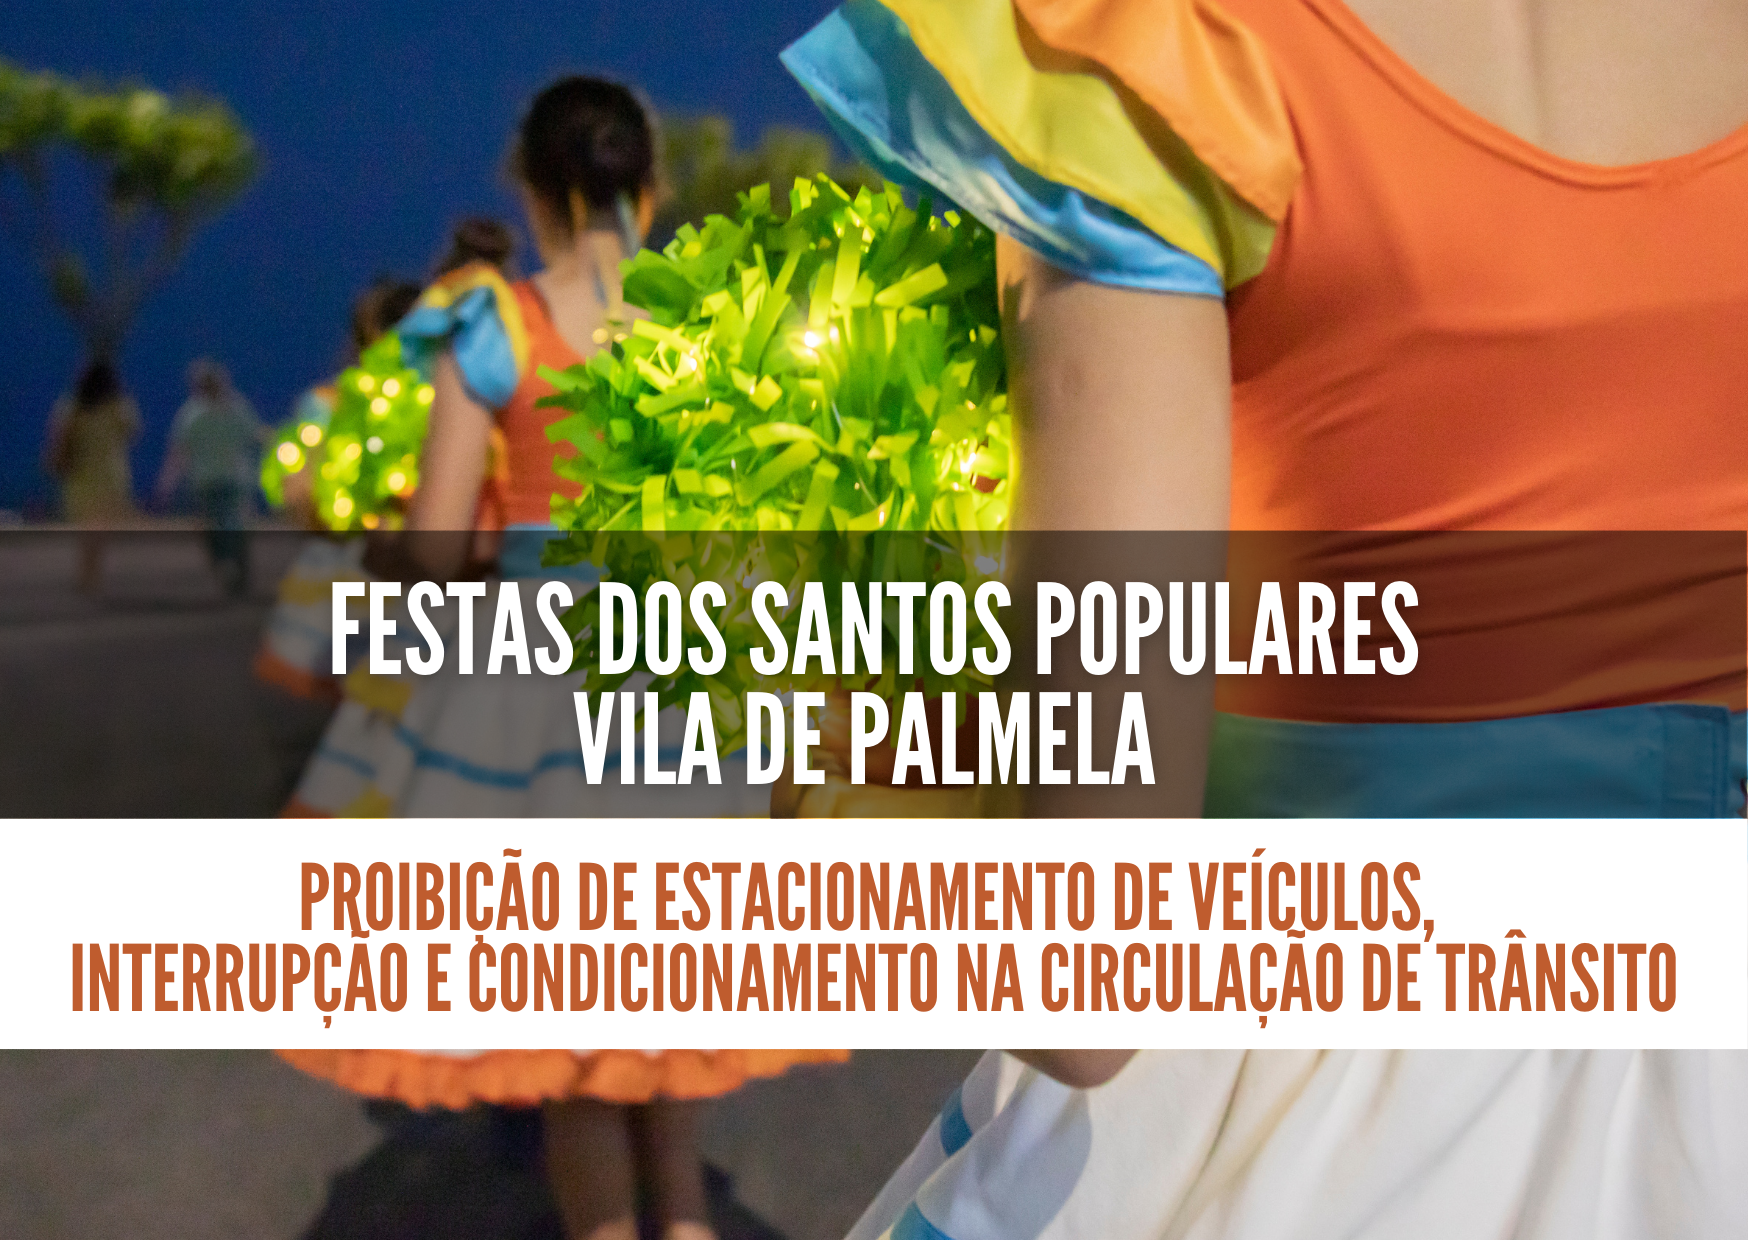 Festas dos Santos Populares 2023 - vila de Palmela: trânsito condicionado